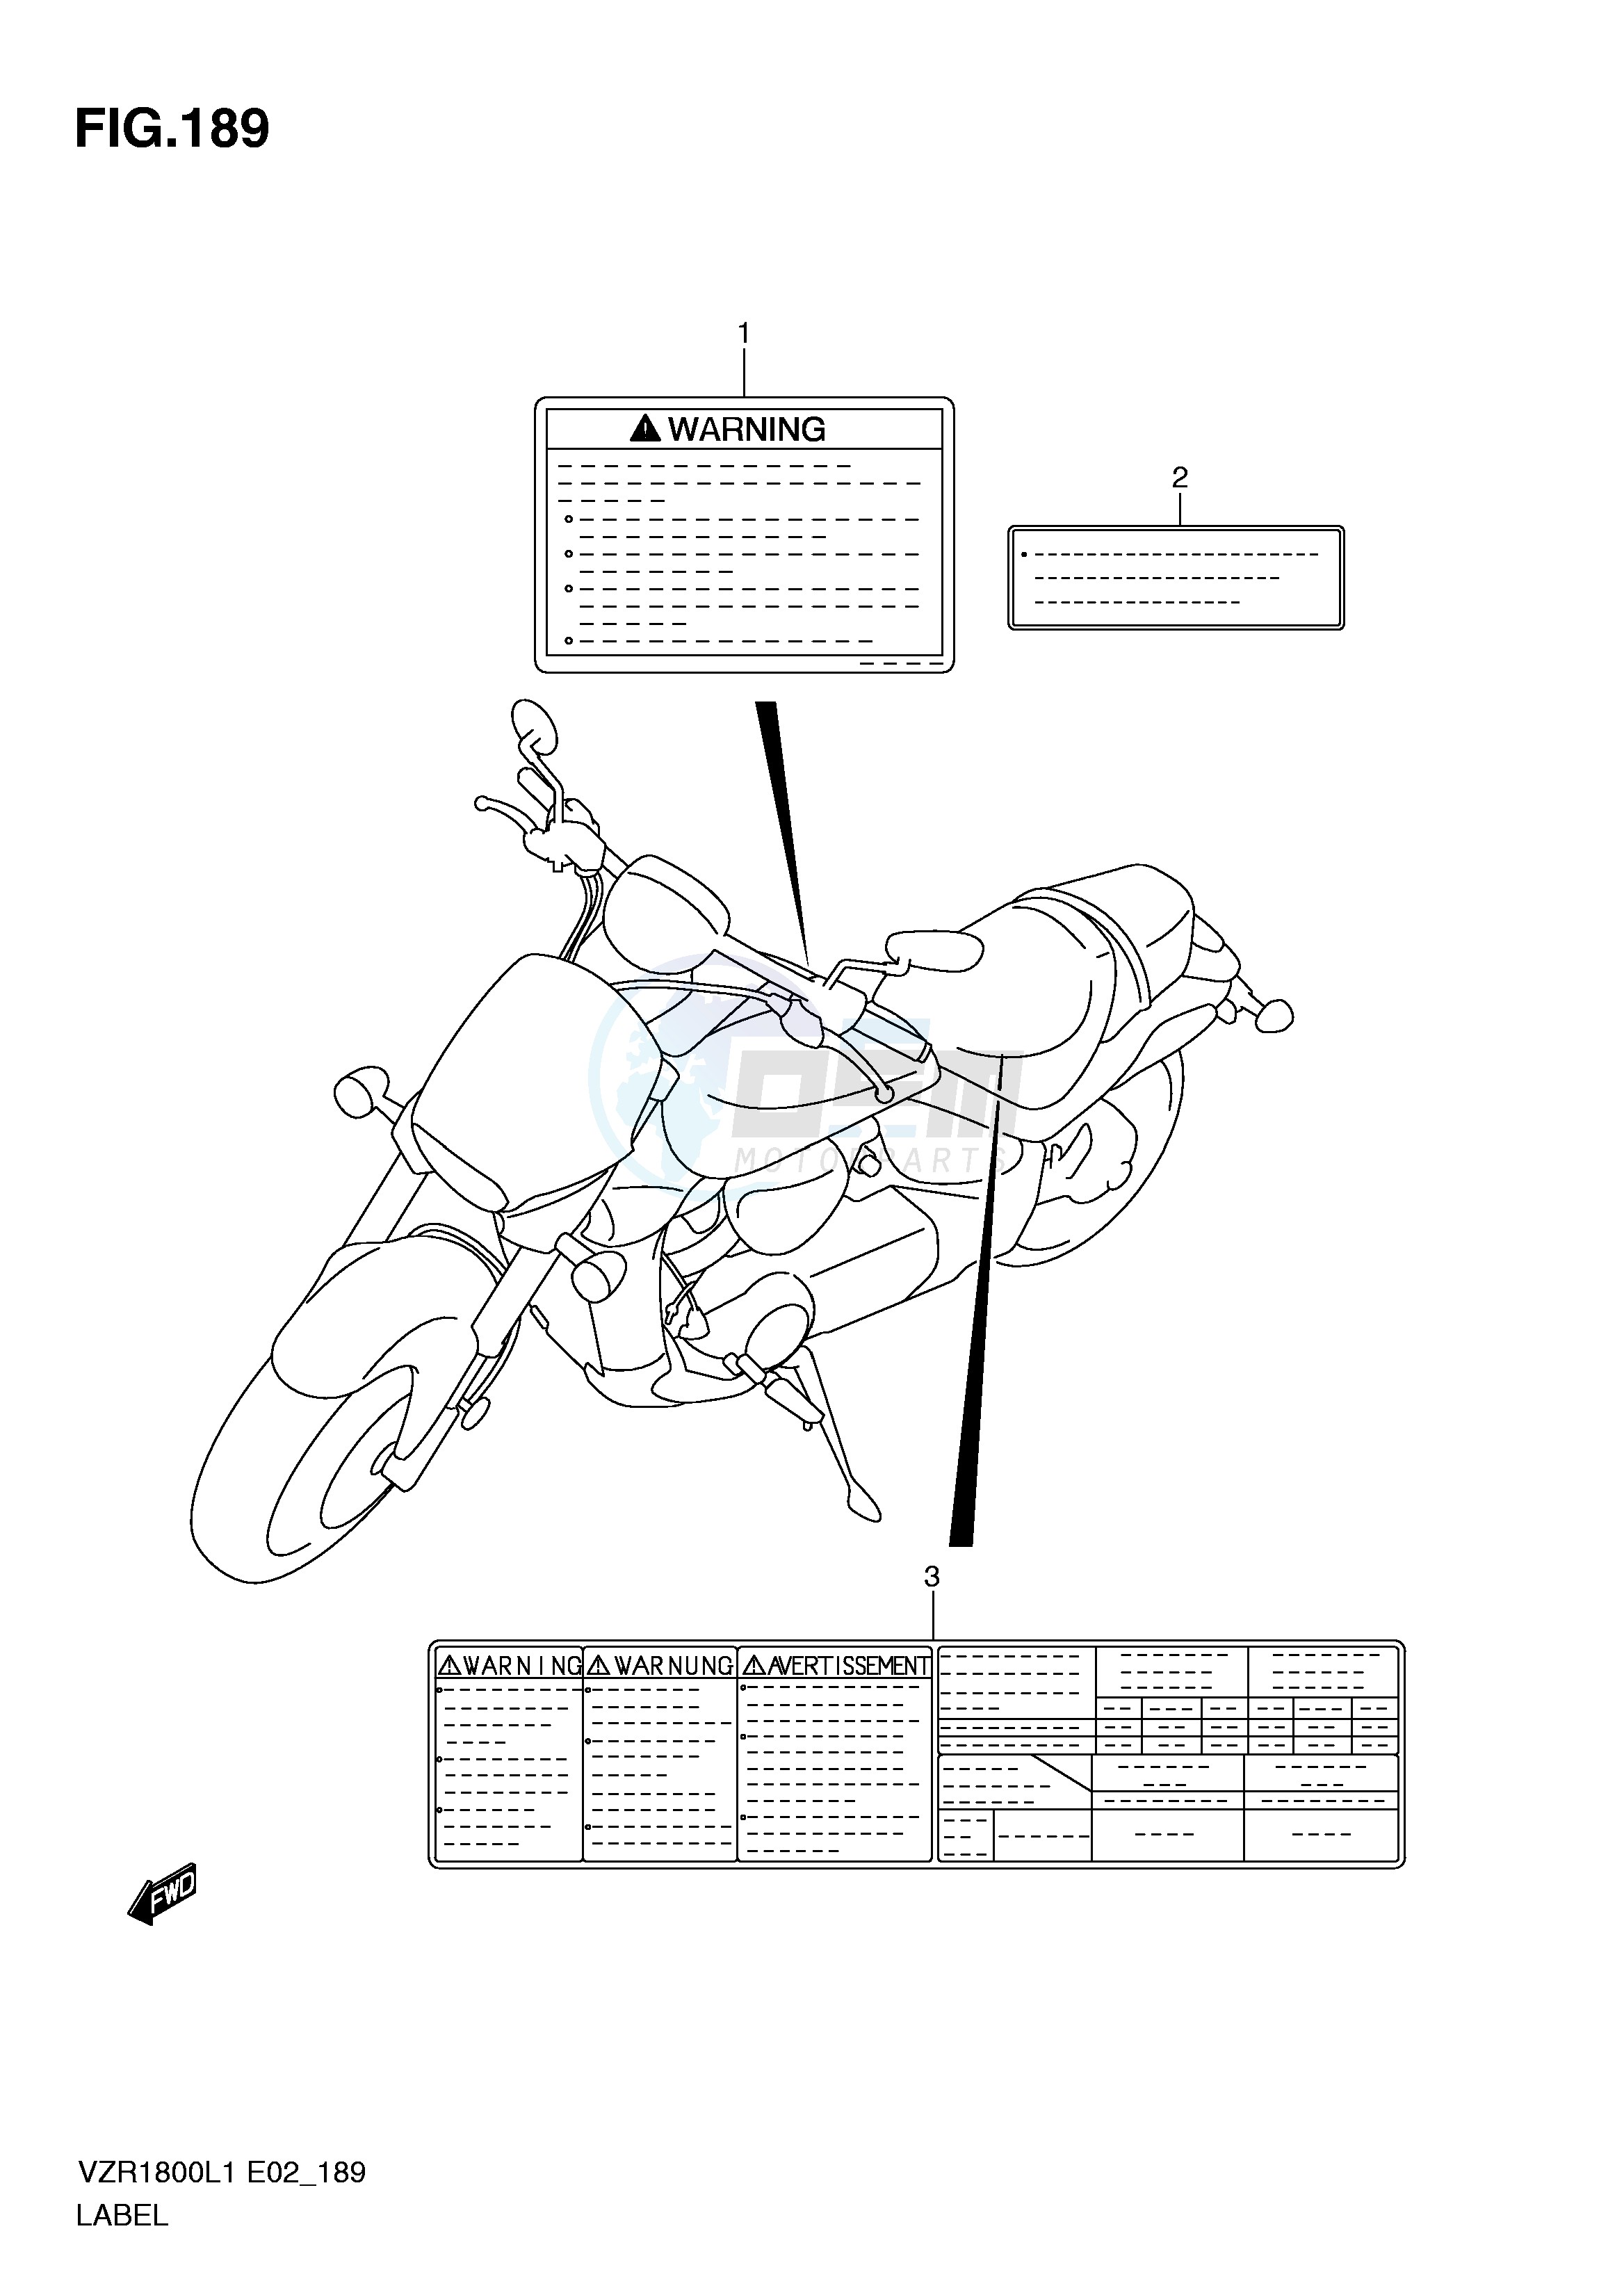 LABEL (VZR1800ZL1 E24) blueprint